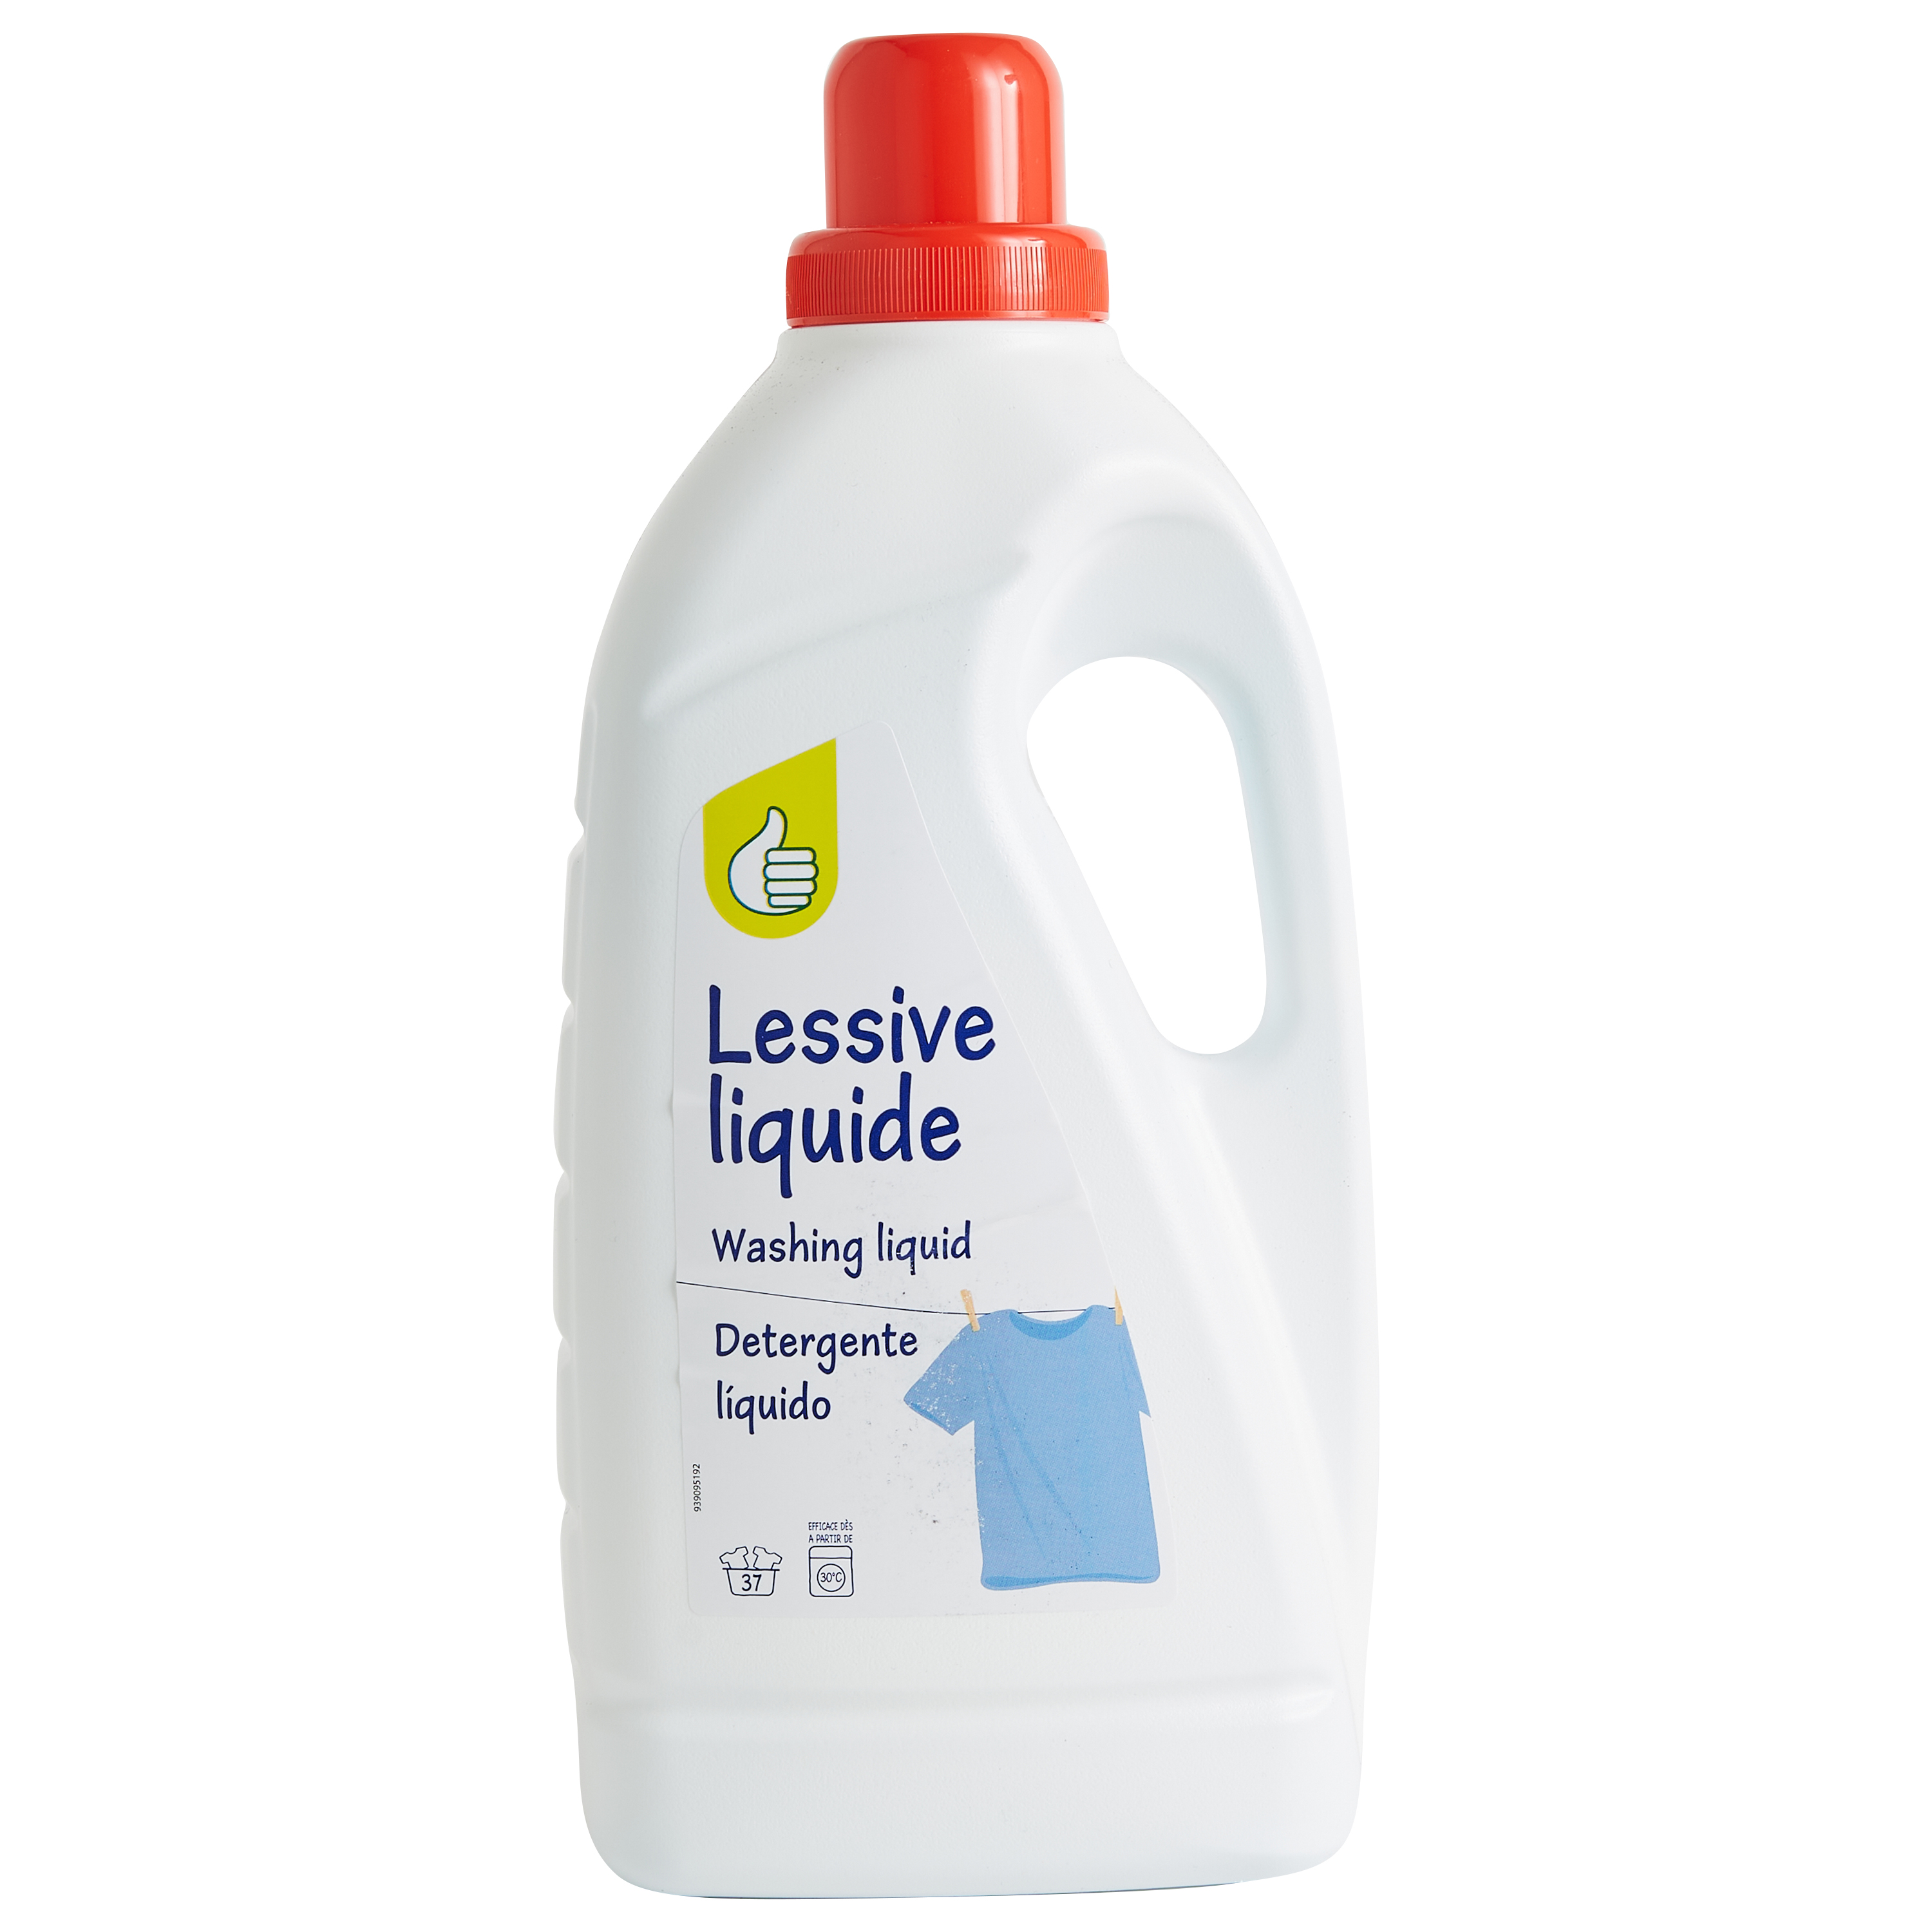 ARIEL Lessive liquide original 58 lavages 2.9l pas cher 